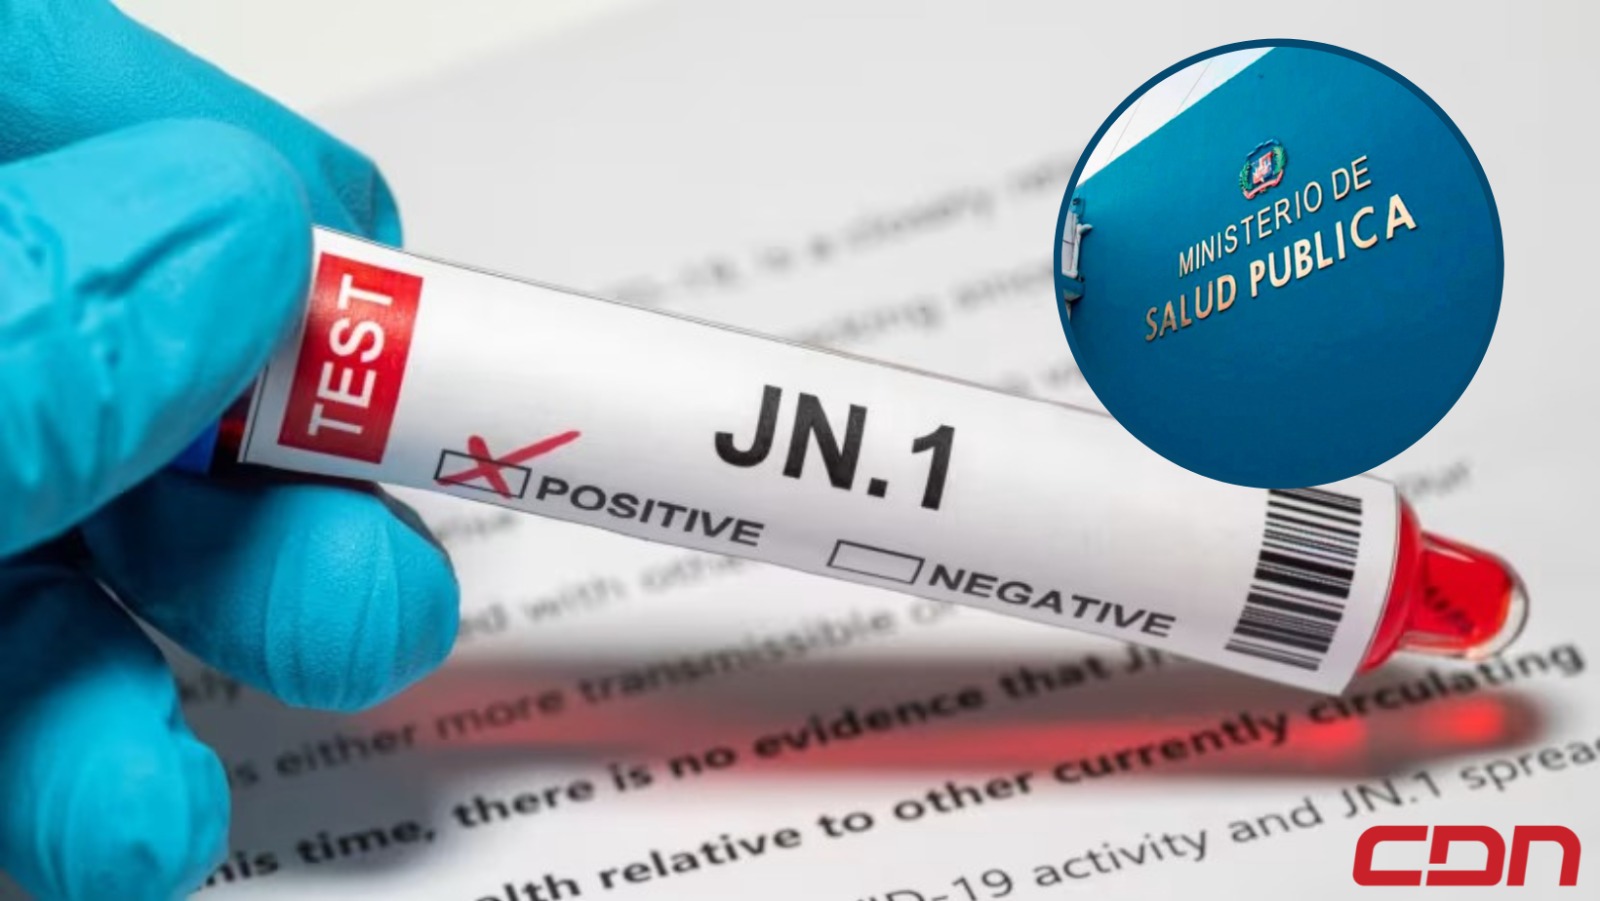 Salud confirma hay 3 casos de JN.1